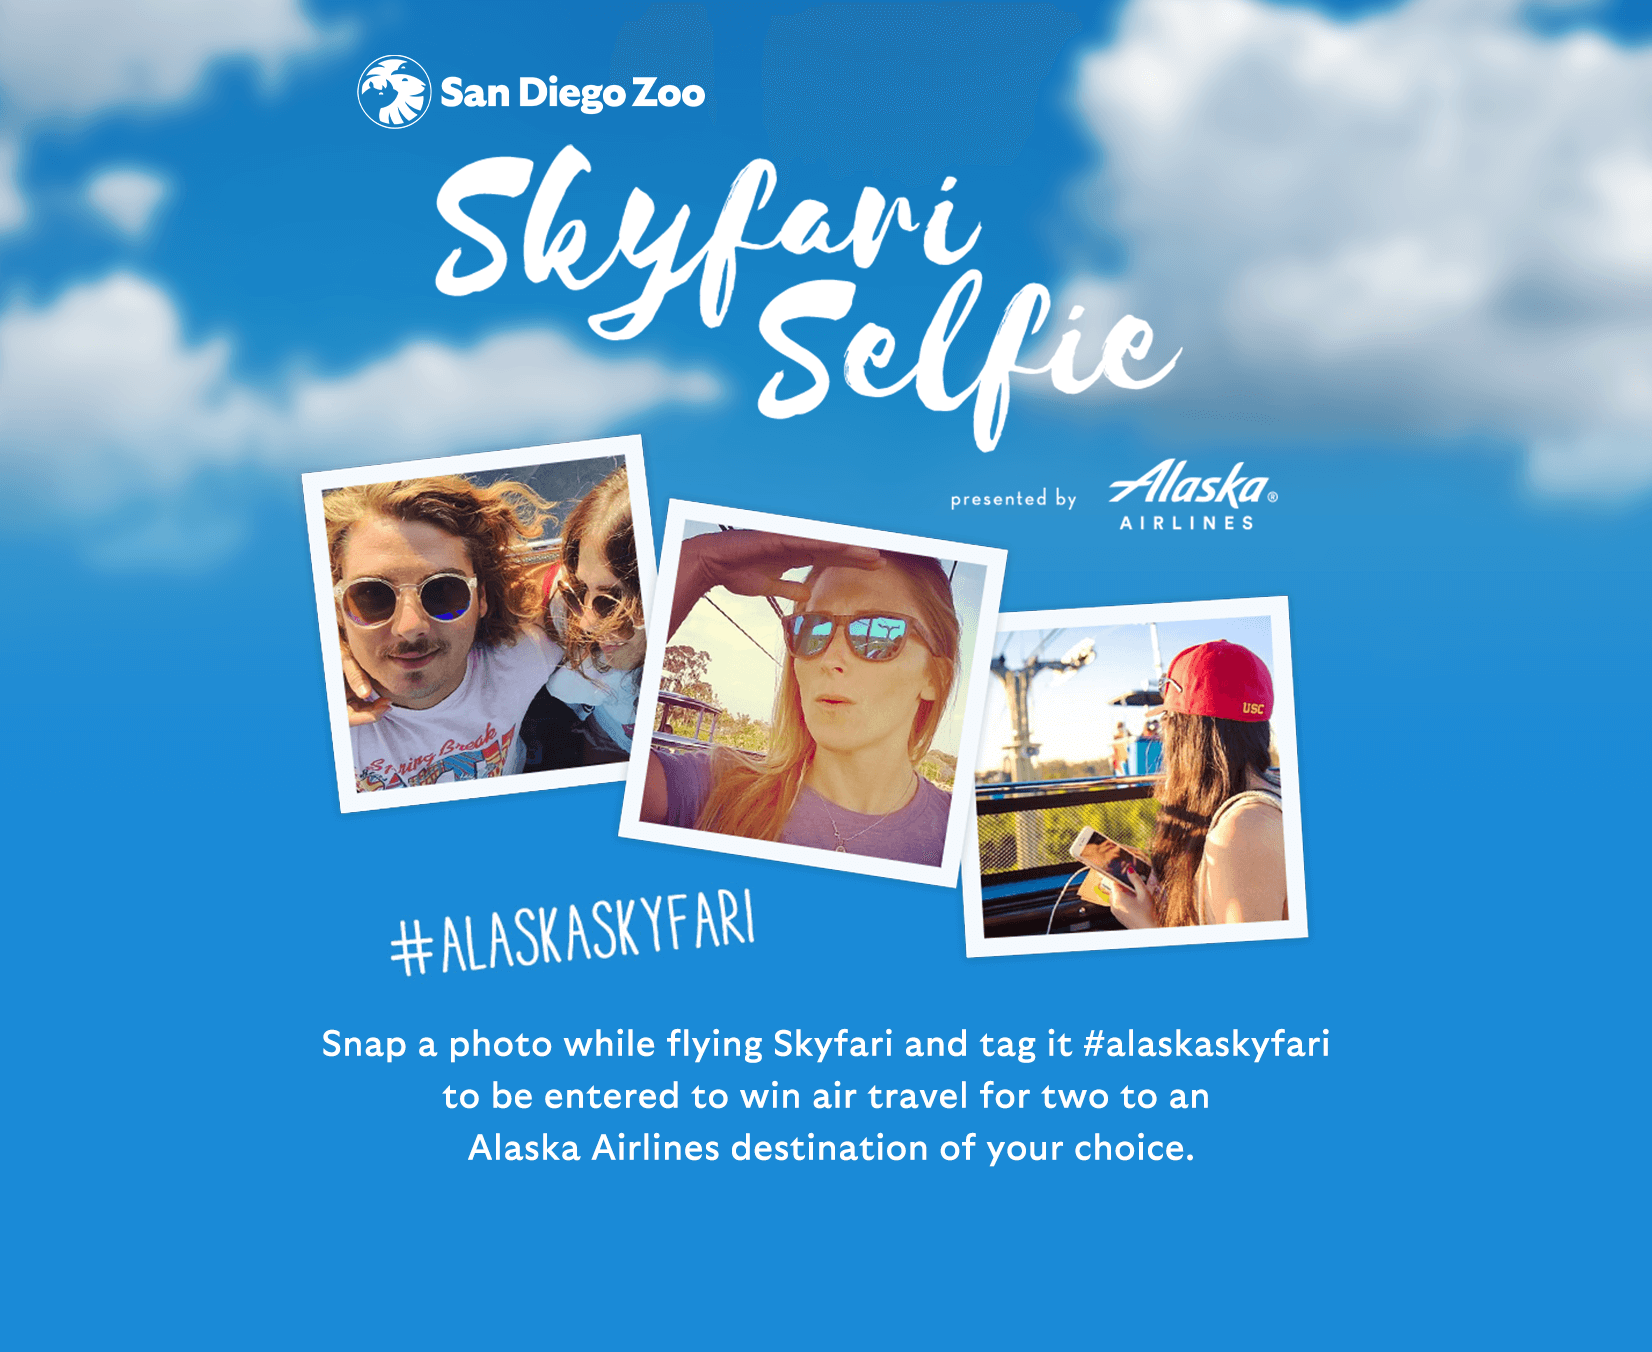 Skyfari selfie promotion #alaskaskyfari